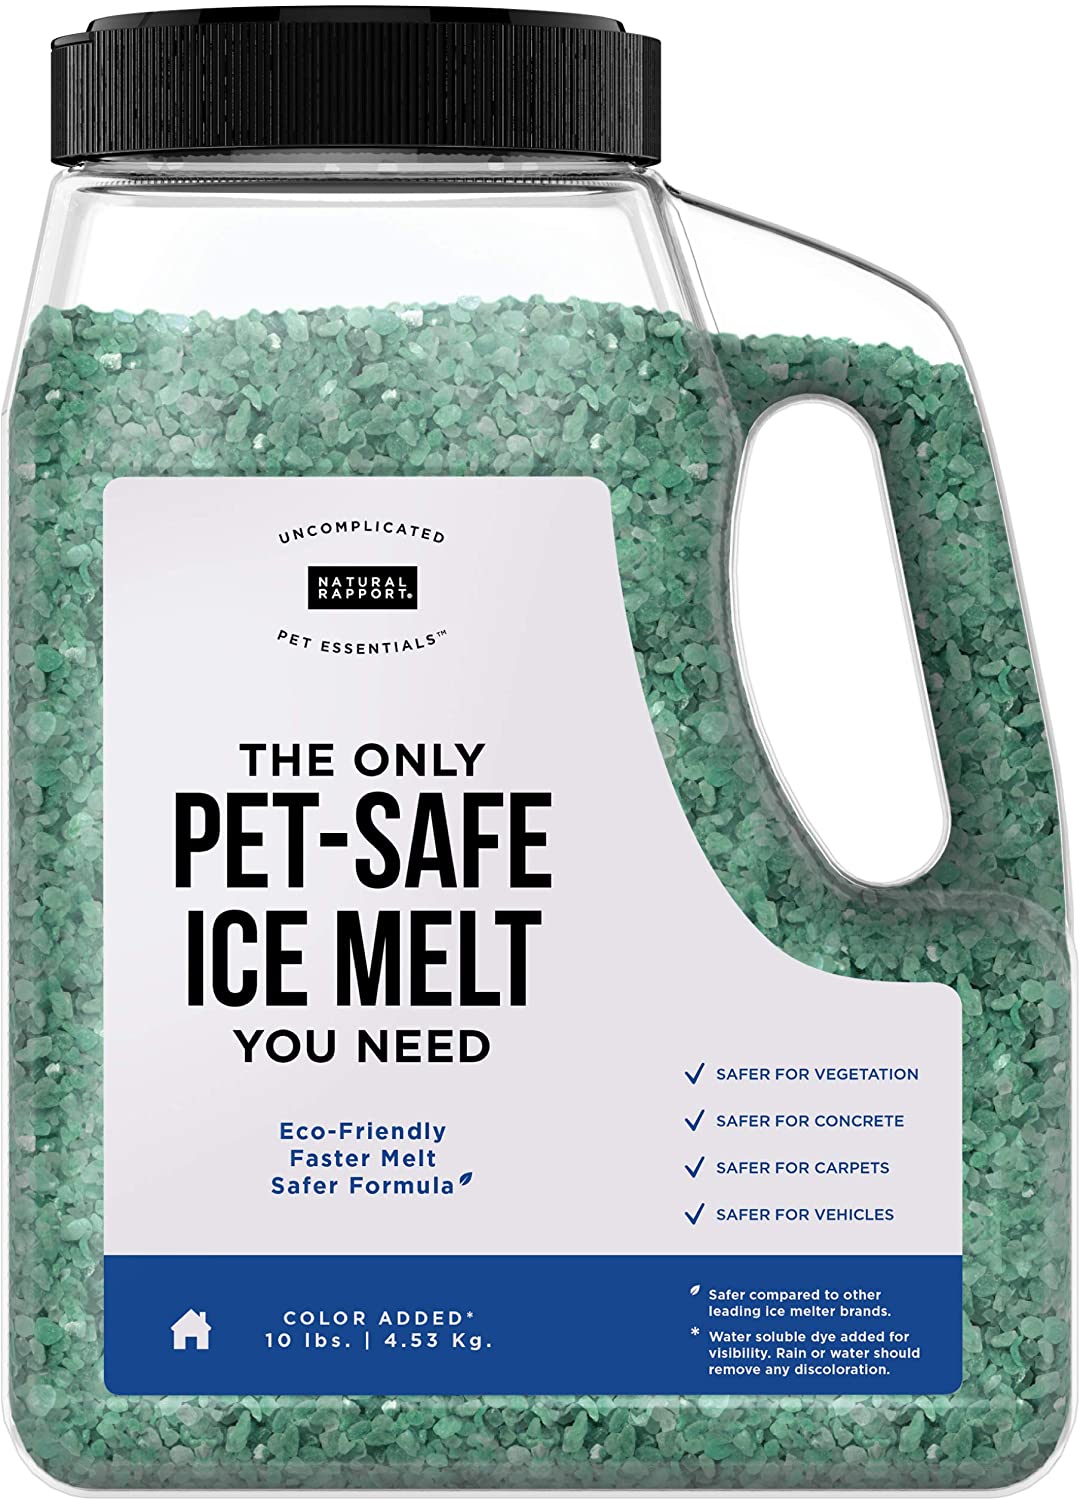 9 Best Pet Safe Ice Melt Product Reviews 